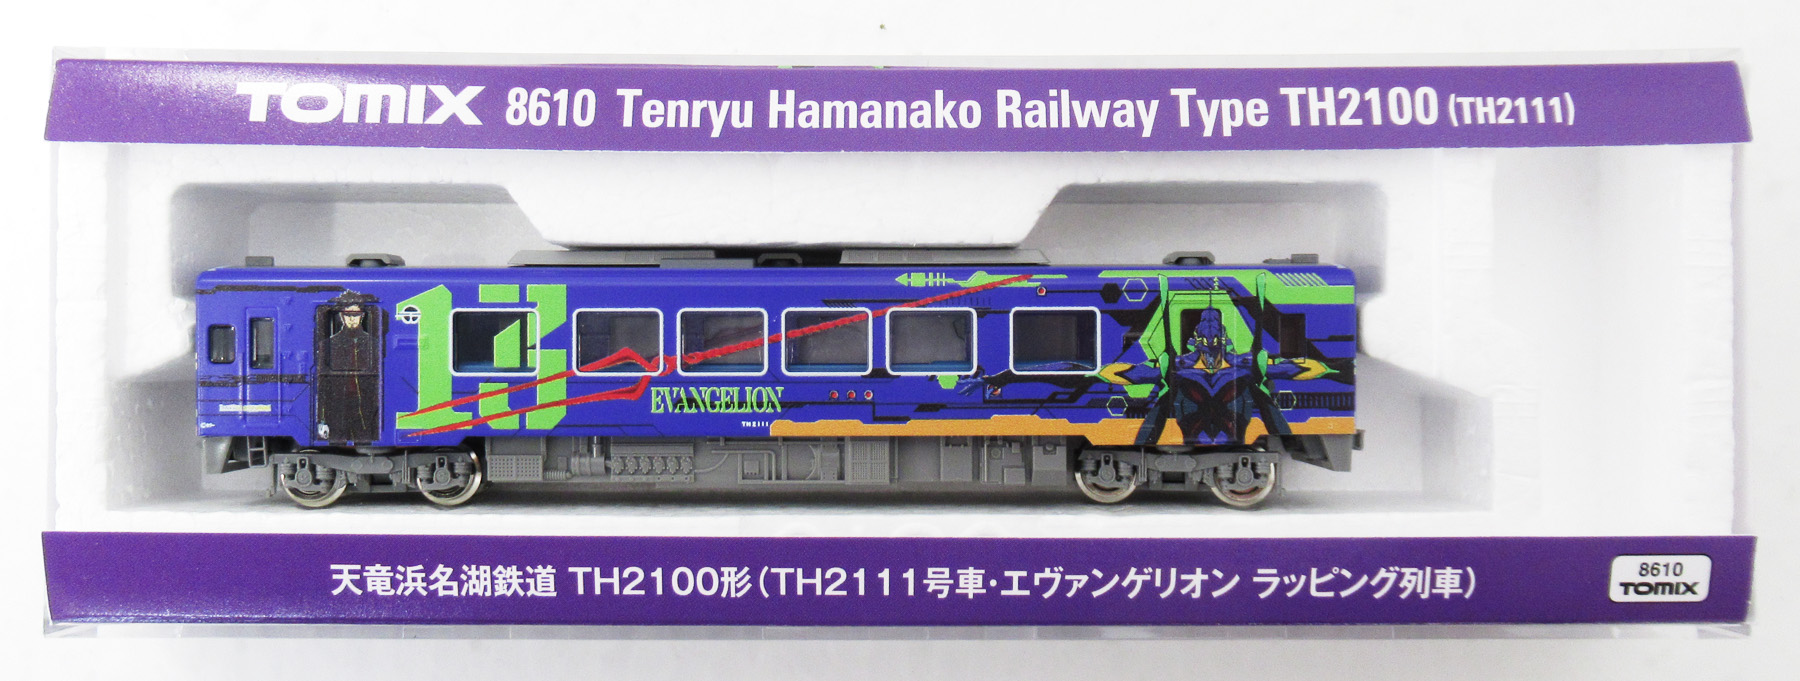 公式]鉄道模型(8610天竜浜名湖鉄道 TH2100形(TH2111号車 